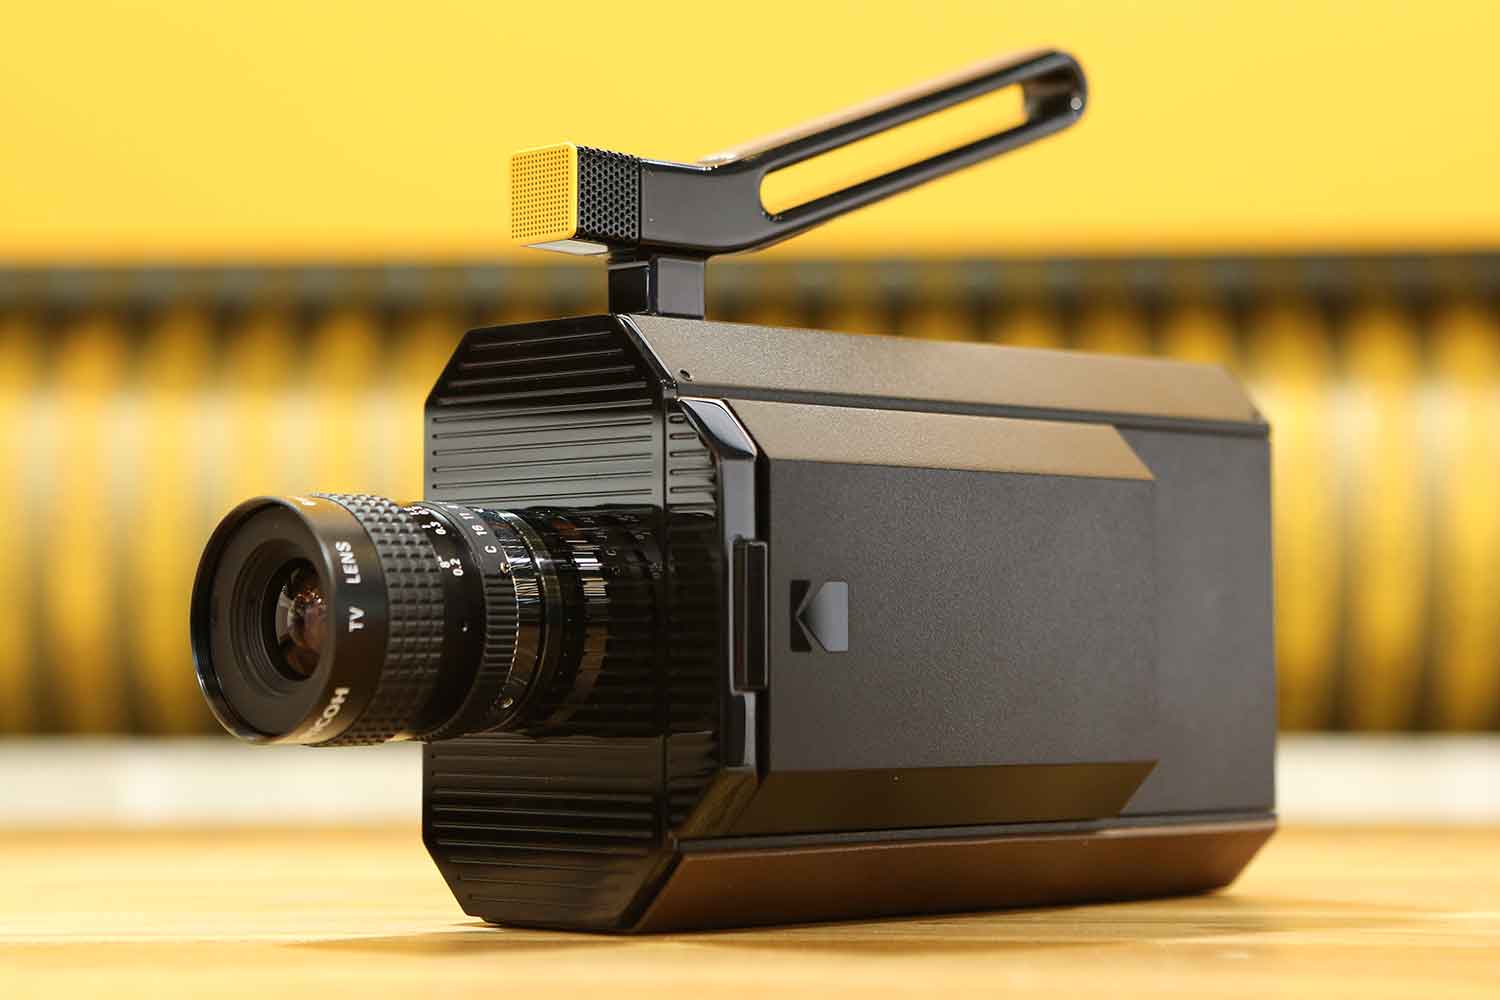 kodaks new super 8mm film camera merges past with future kodak 8 ax8a8260